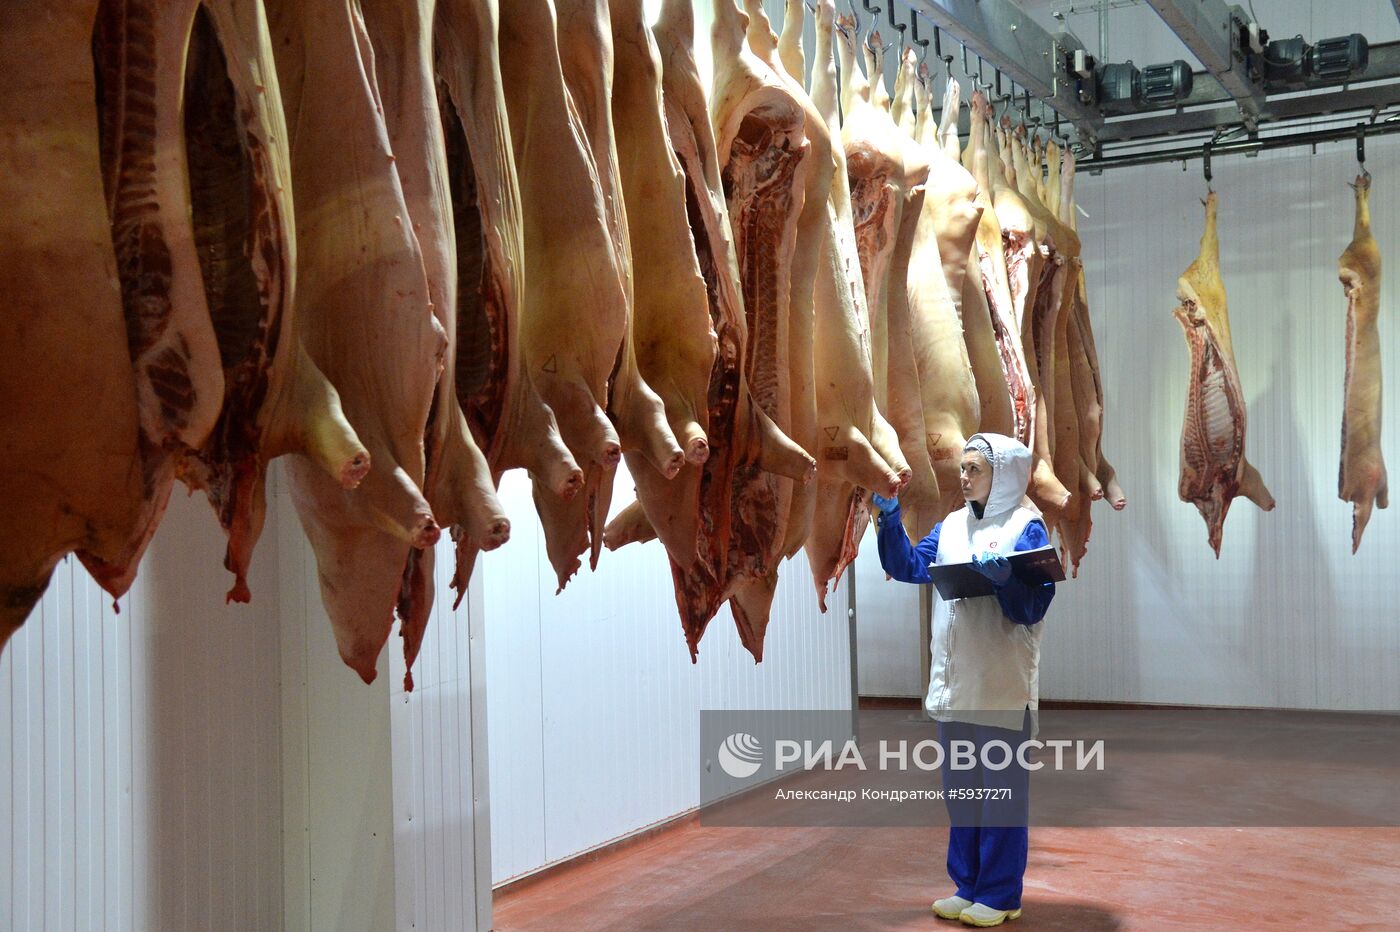 Мясоперерабатывающий комбинат в Челябинской области